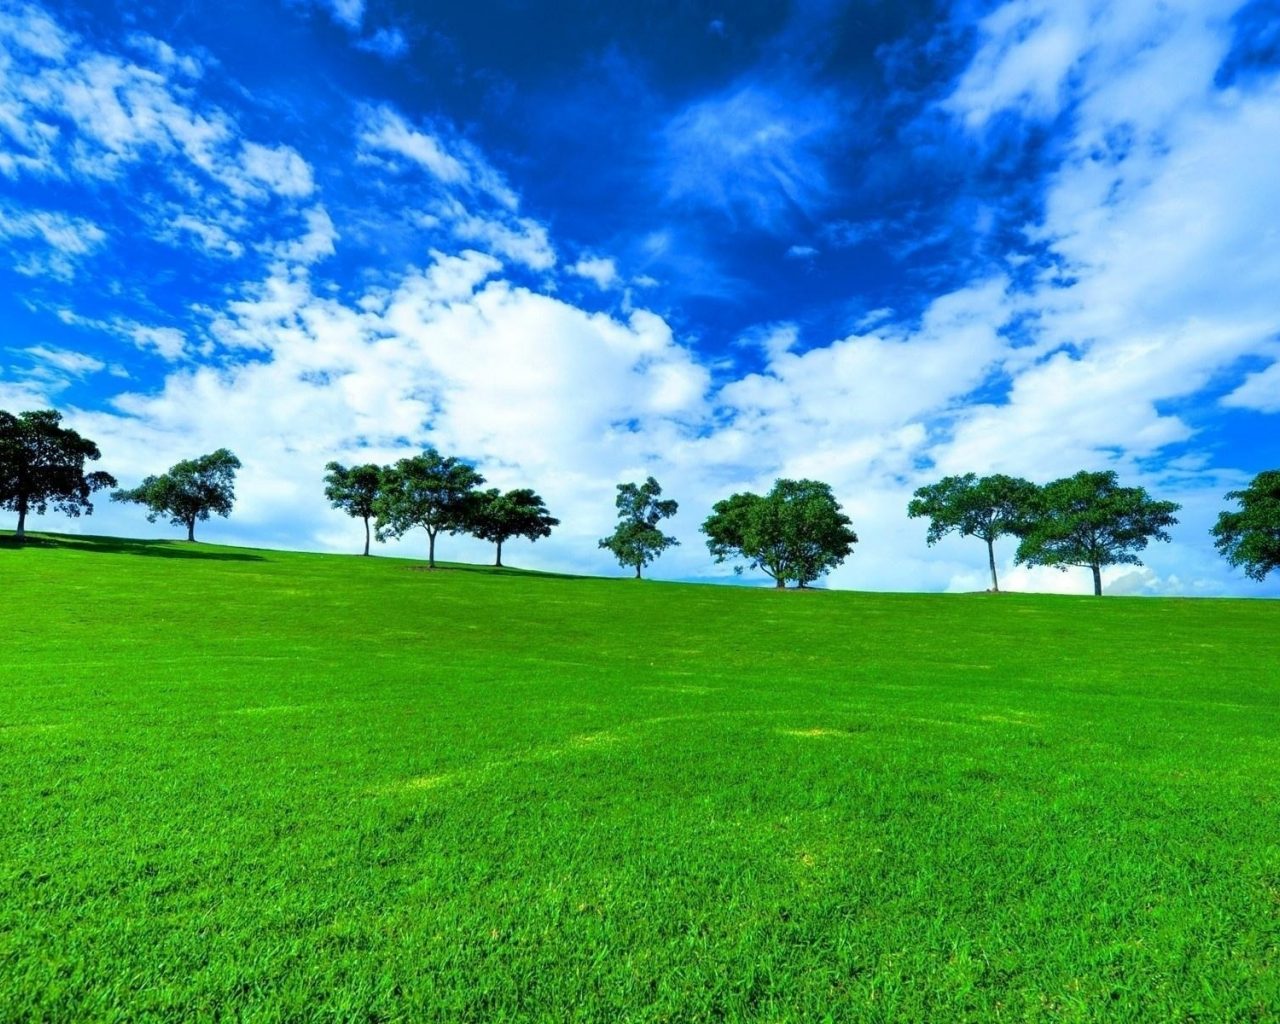 лето, трава зелёная, деревья, облака